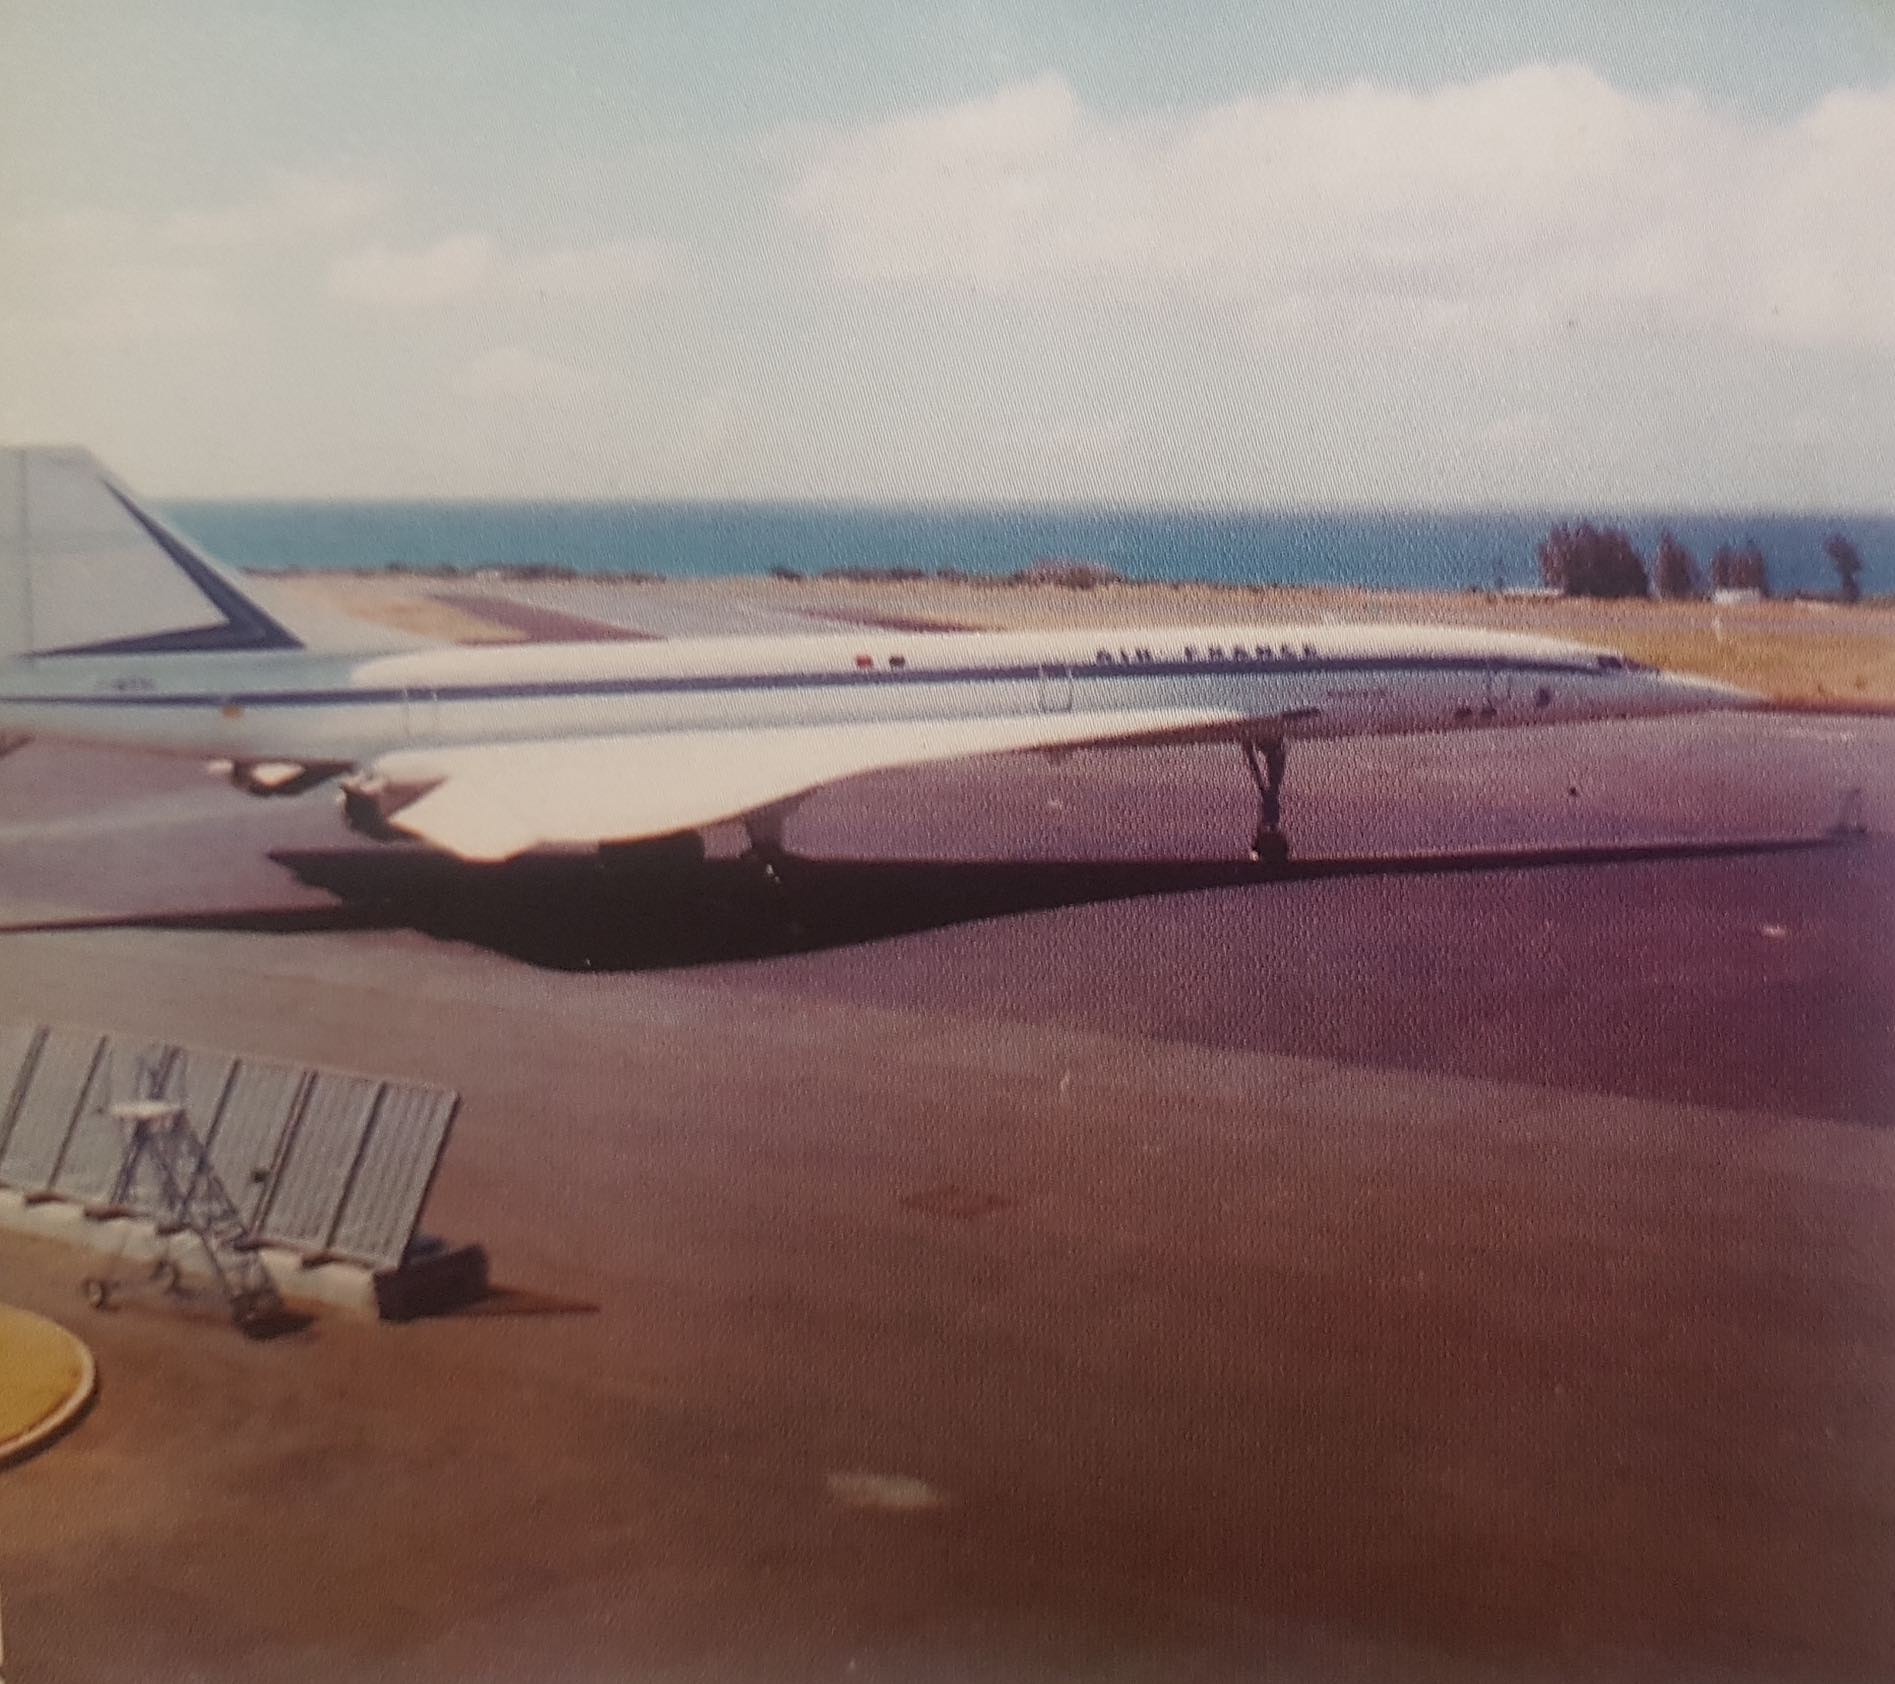 L’événement est double en 1976 : Les Réunionnais voient atterrir le Concorde Air France à bord duquel a pris place Valéry Giscard D’Estaing